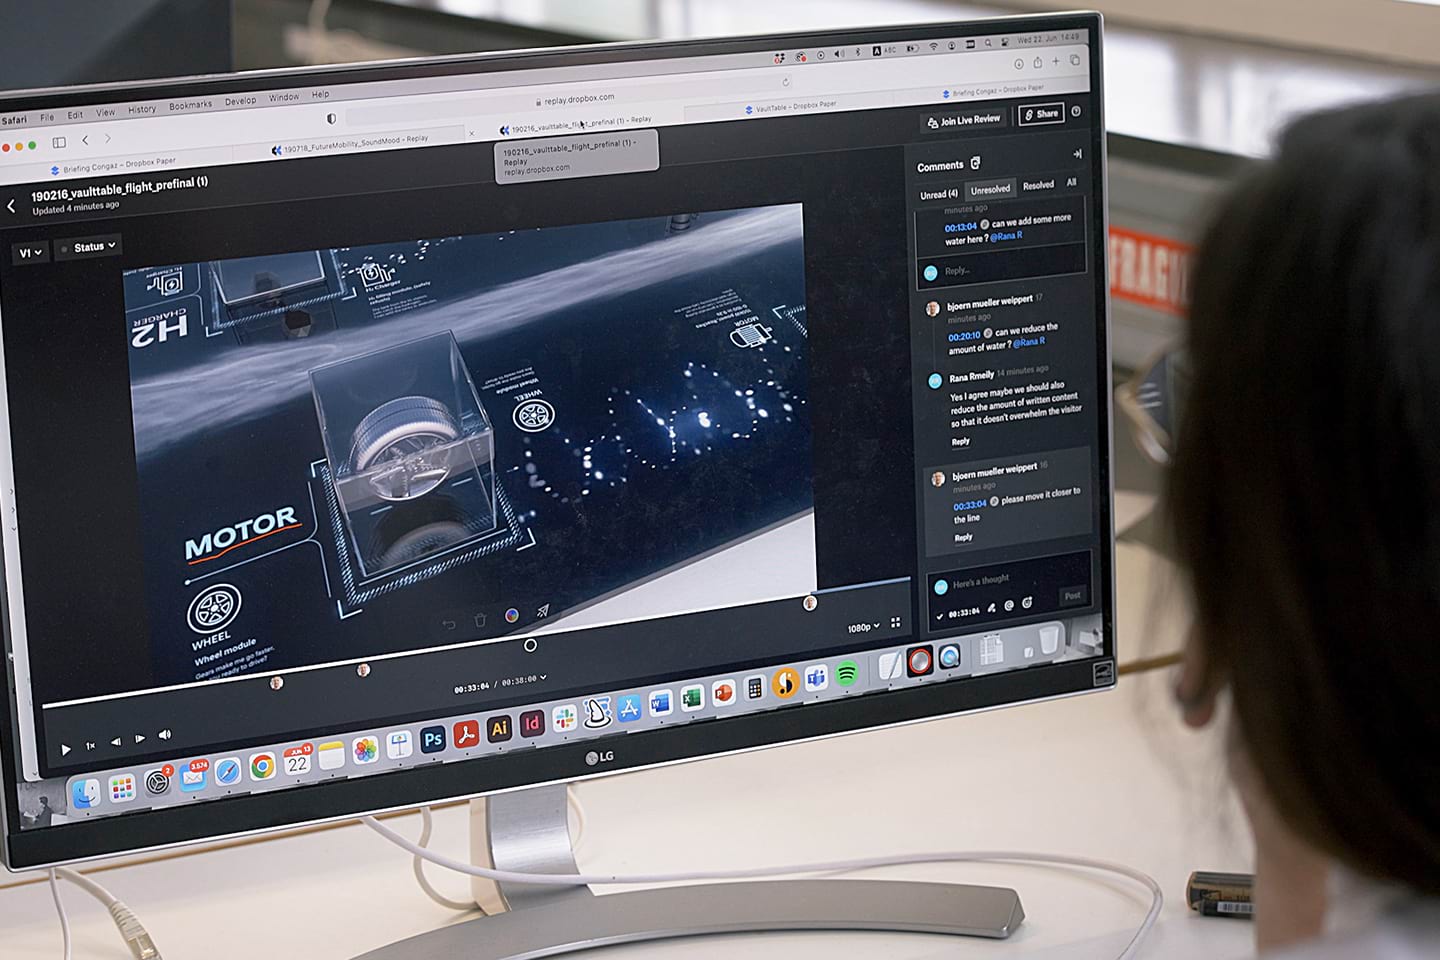 La pantalla de la computadora muestra a una persona trabajando en ediciones de video con Dropbox Replay